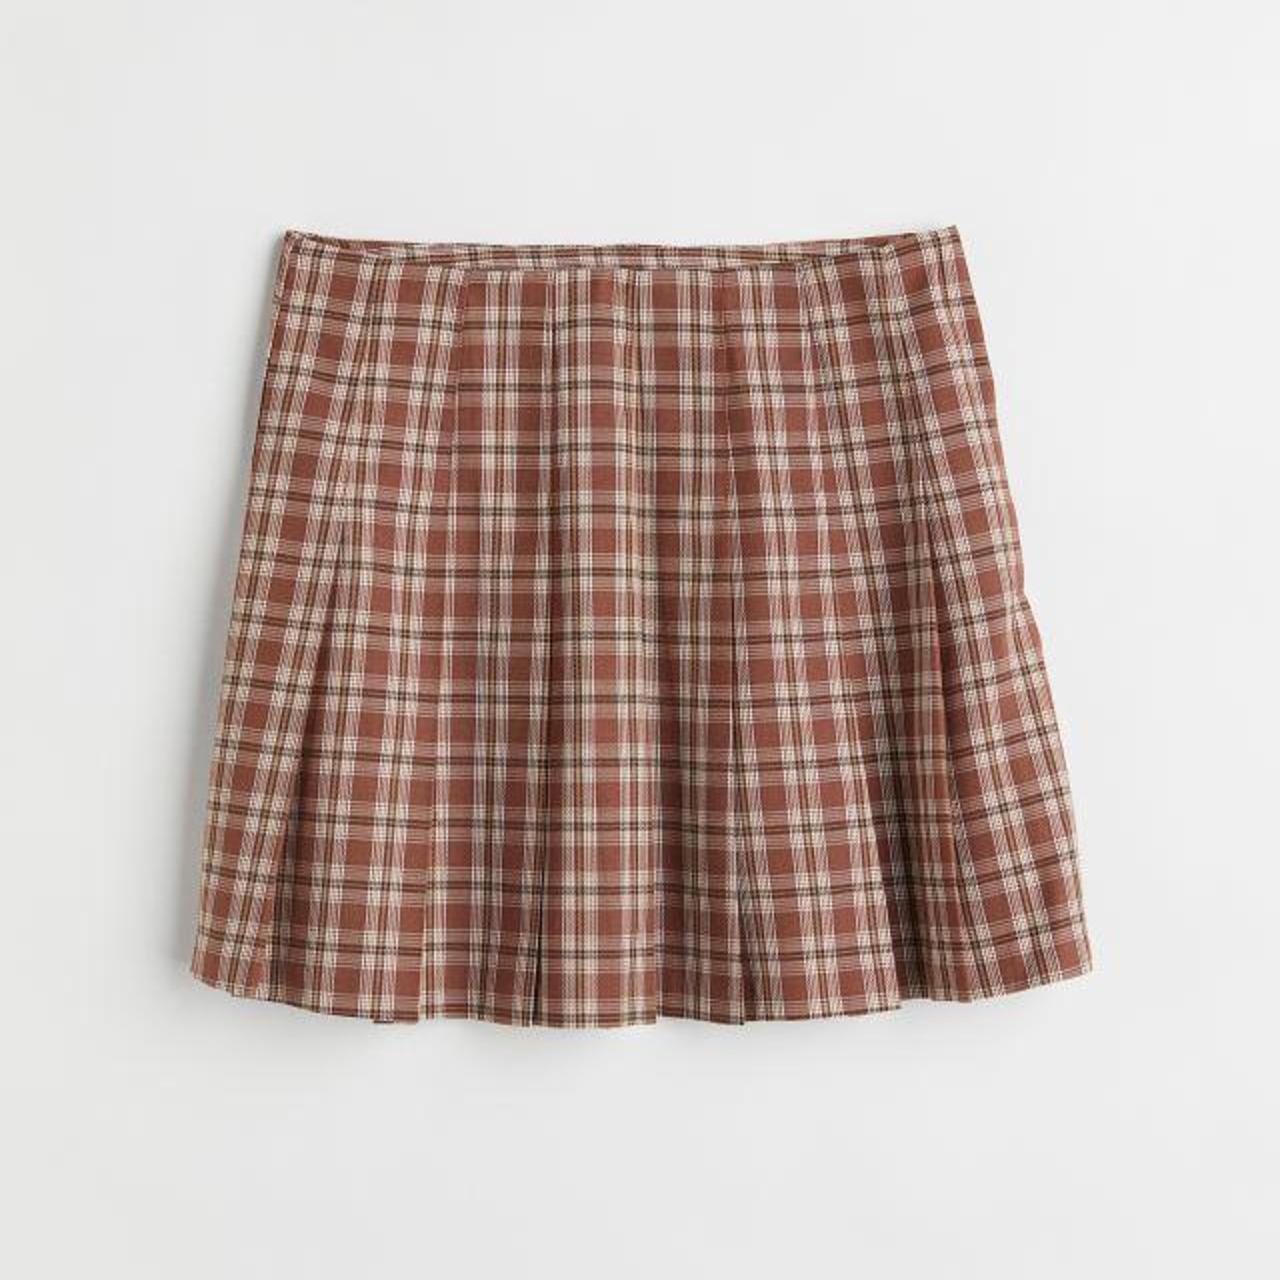 Stylenanda Women's Skirt (2)